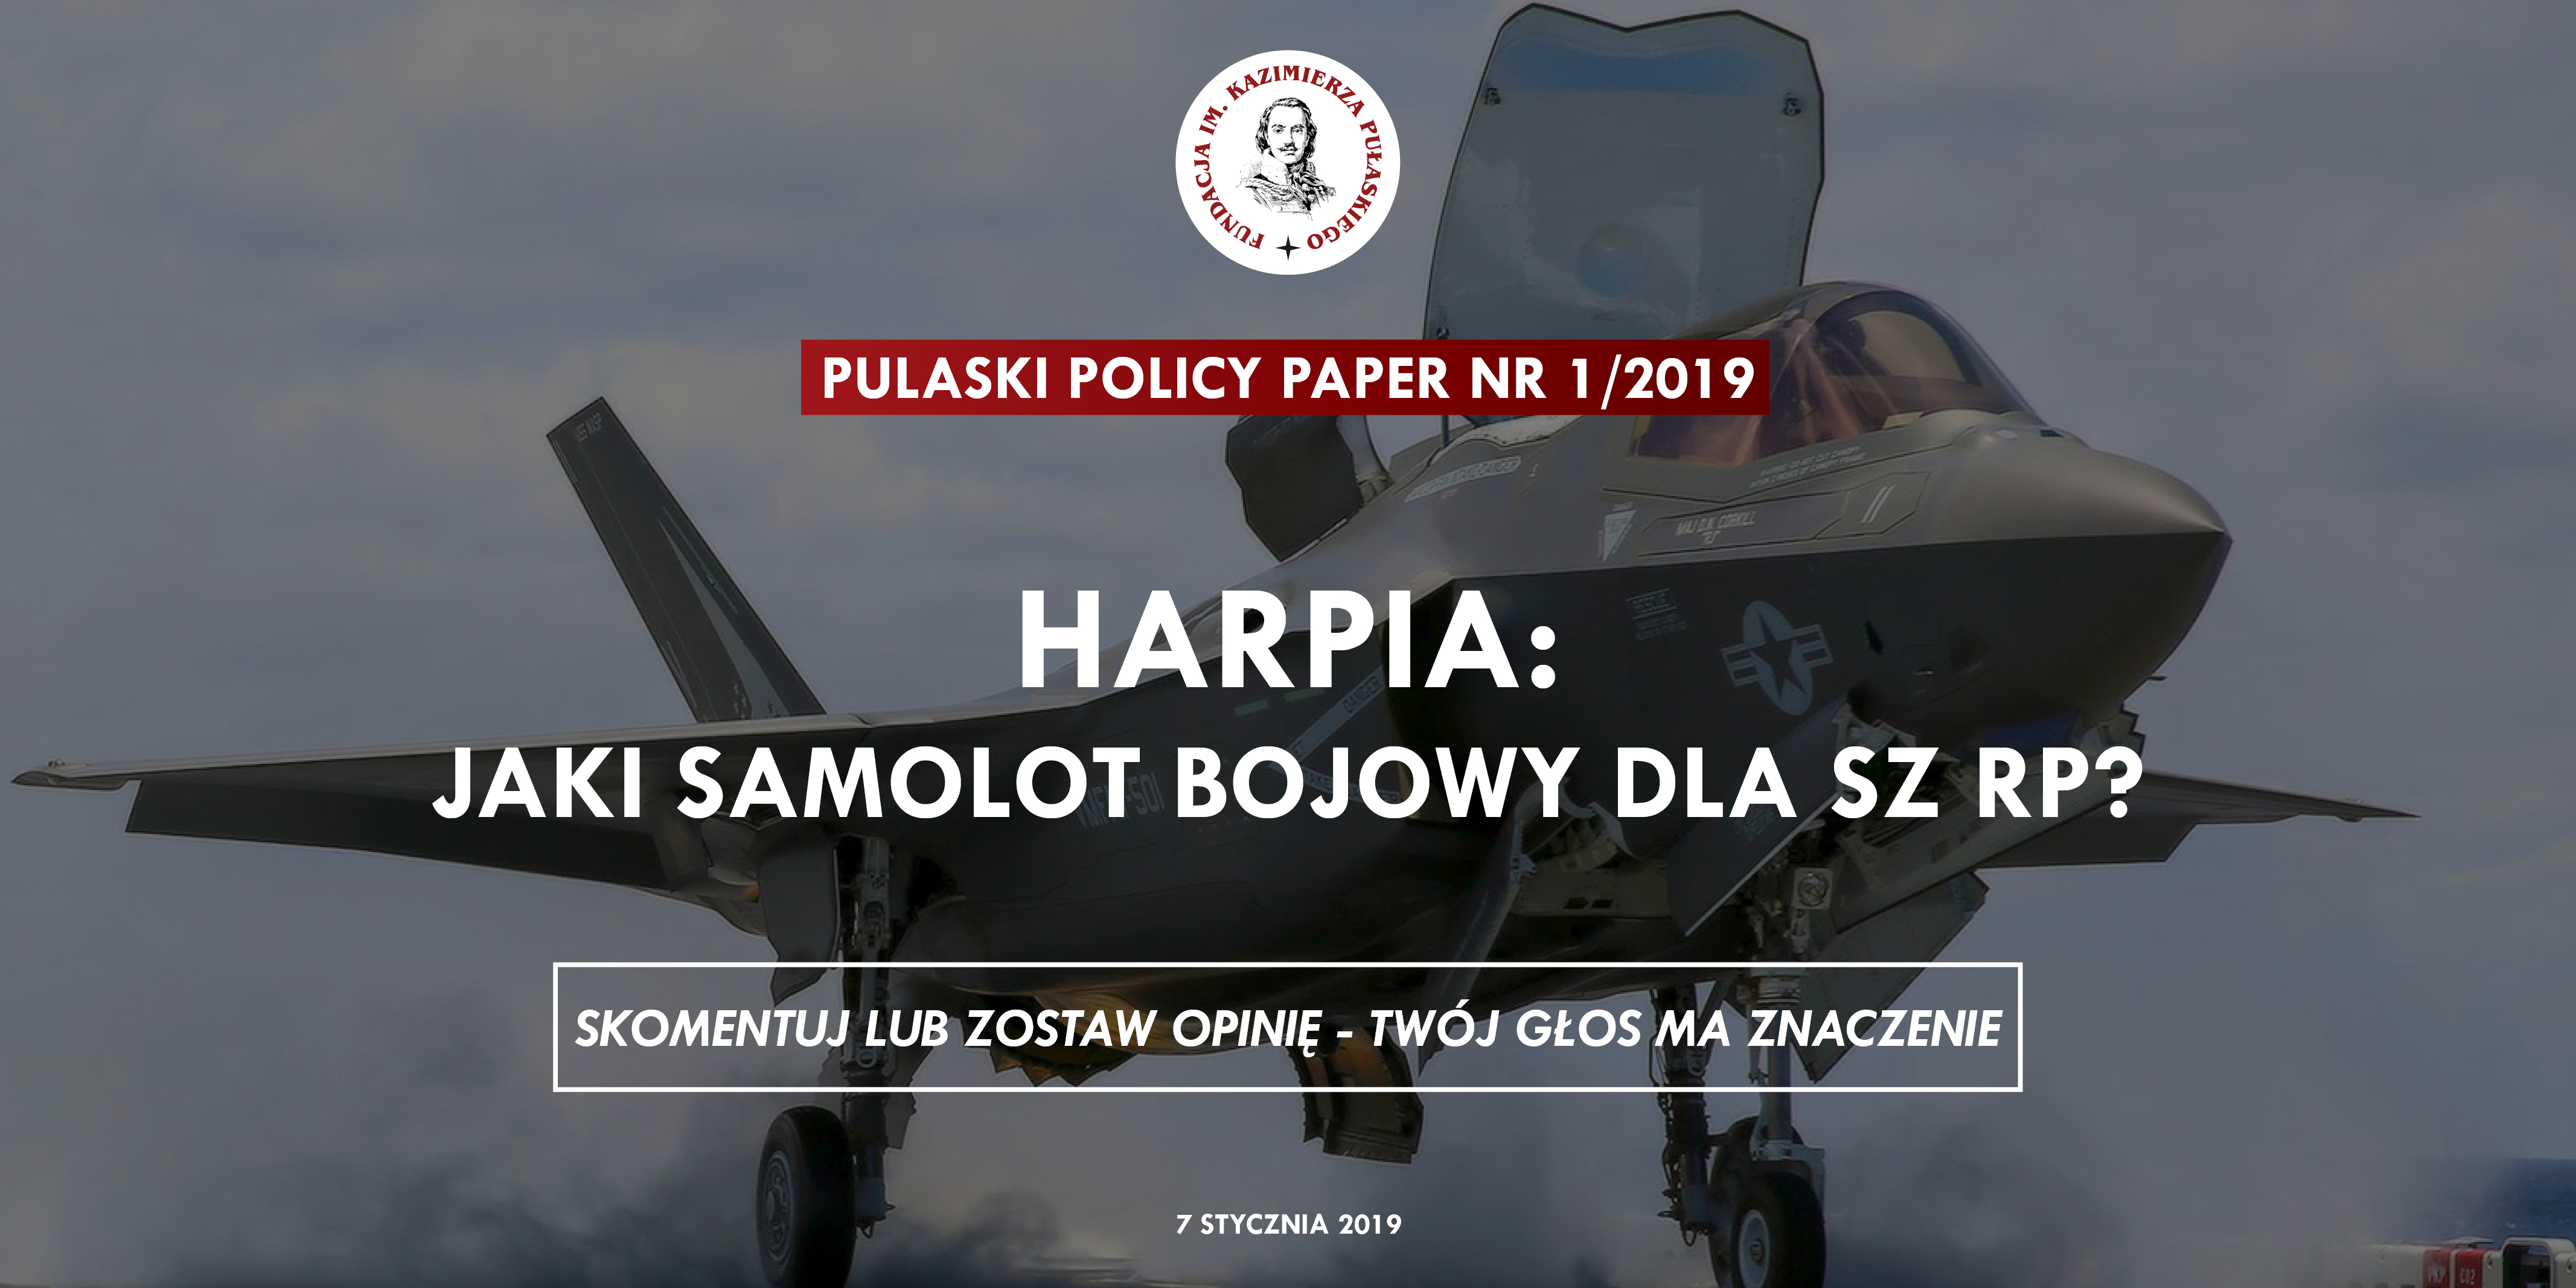 PULASKI POLICY PAPER – M. Szopa: Harpia: jaki samolot bojowy dla SZ RP?